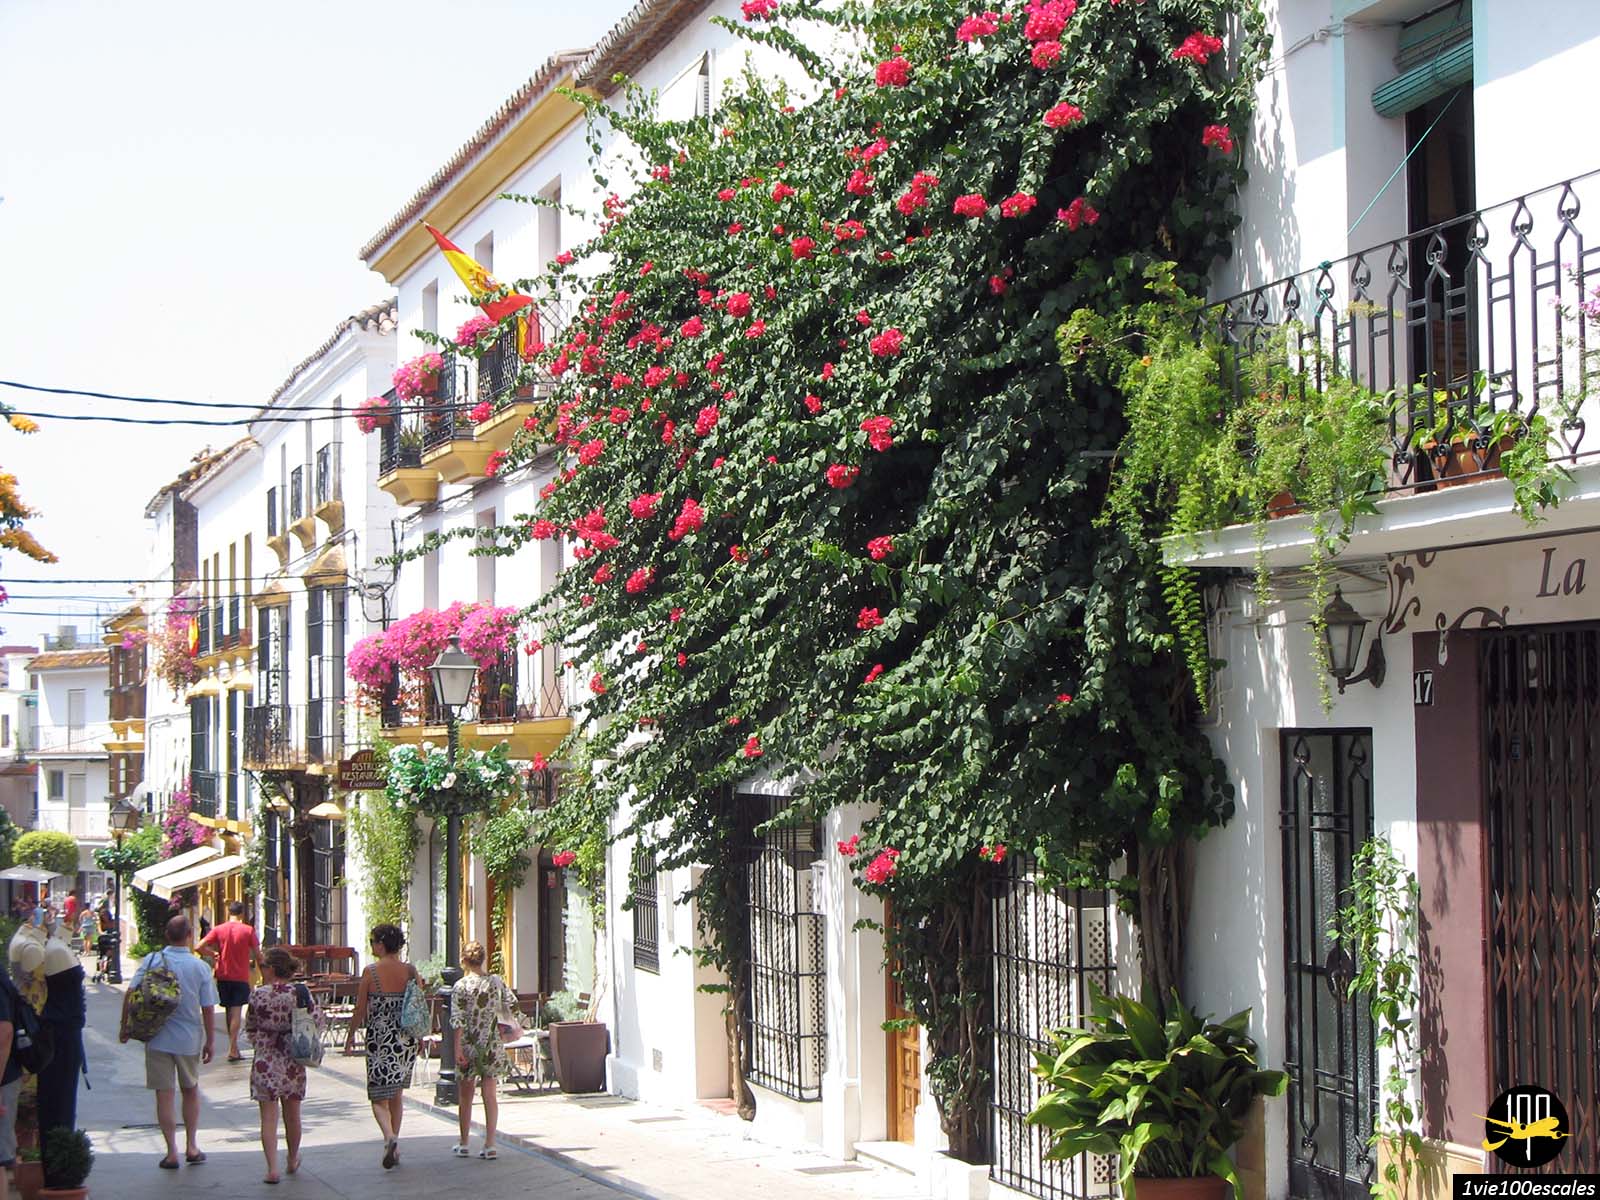 La Calle Ancha de Marbella avec ses immeubles blancs et ses balcons fleuris